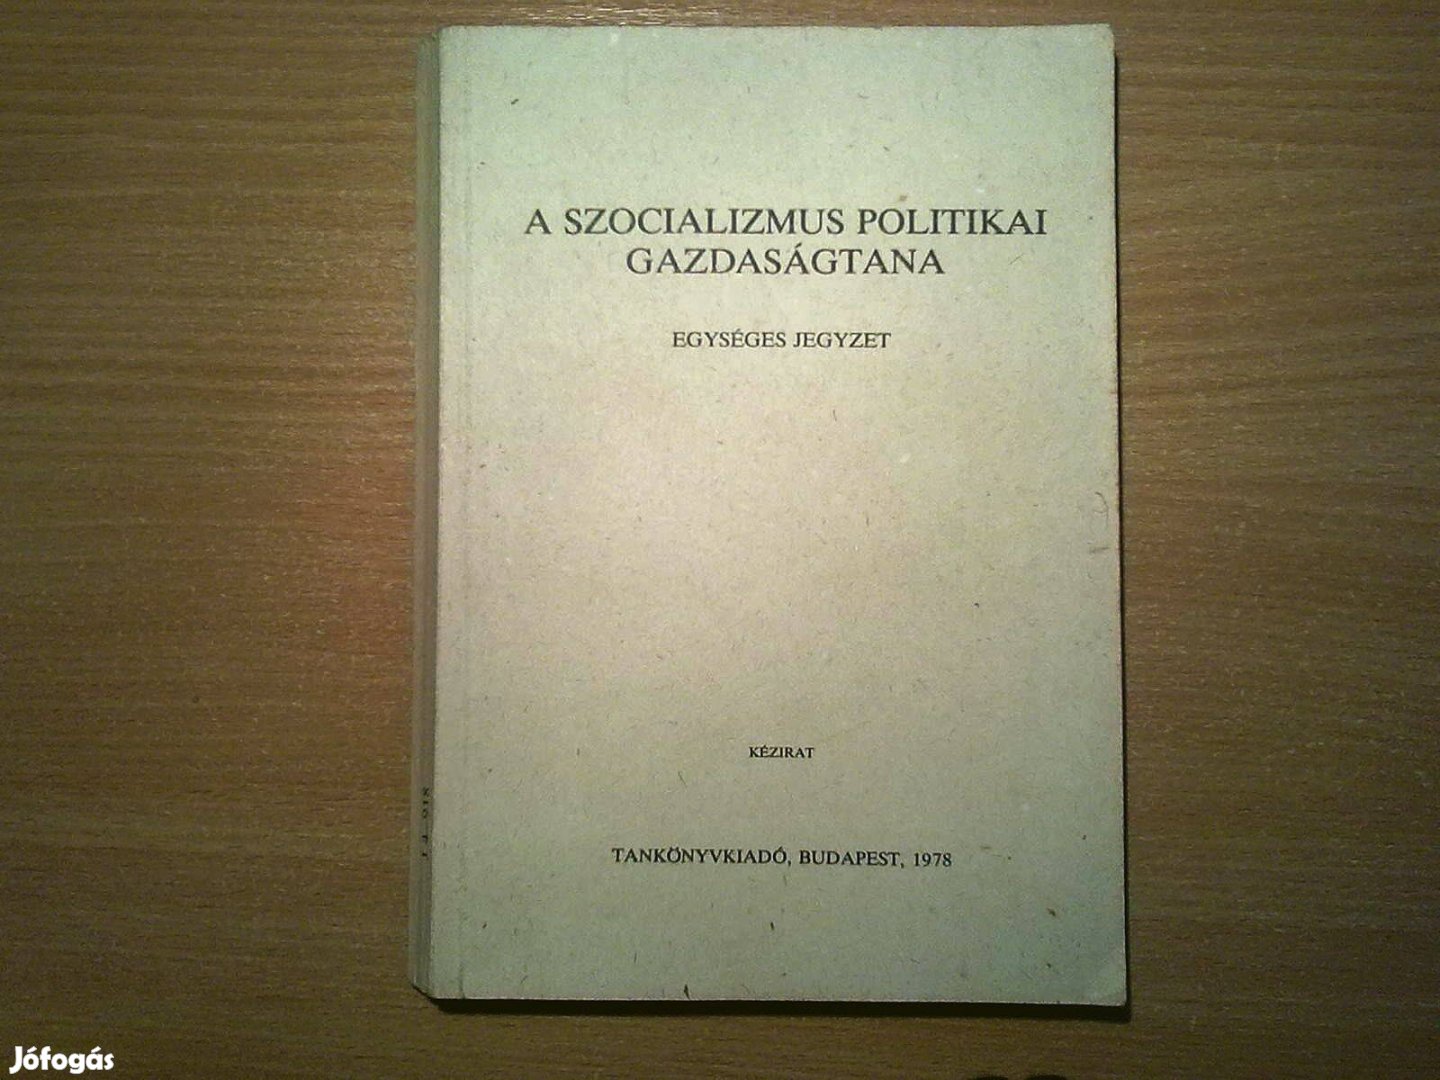 A szocializmus politikai gazdaságtana (Egységes jegyzet)